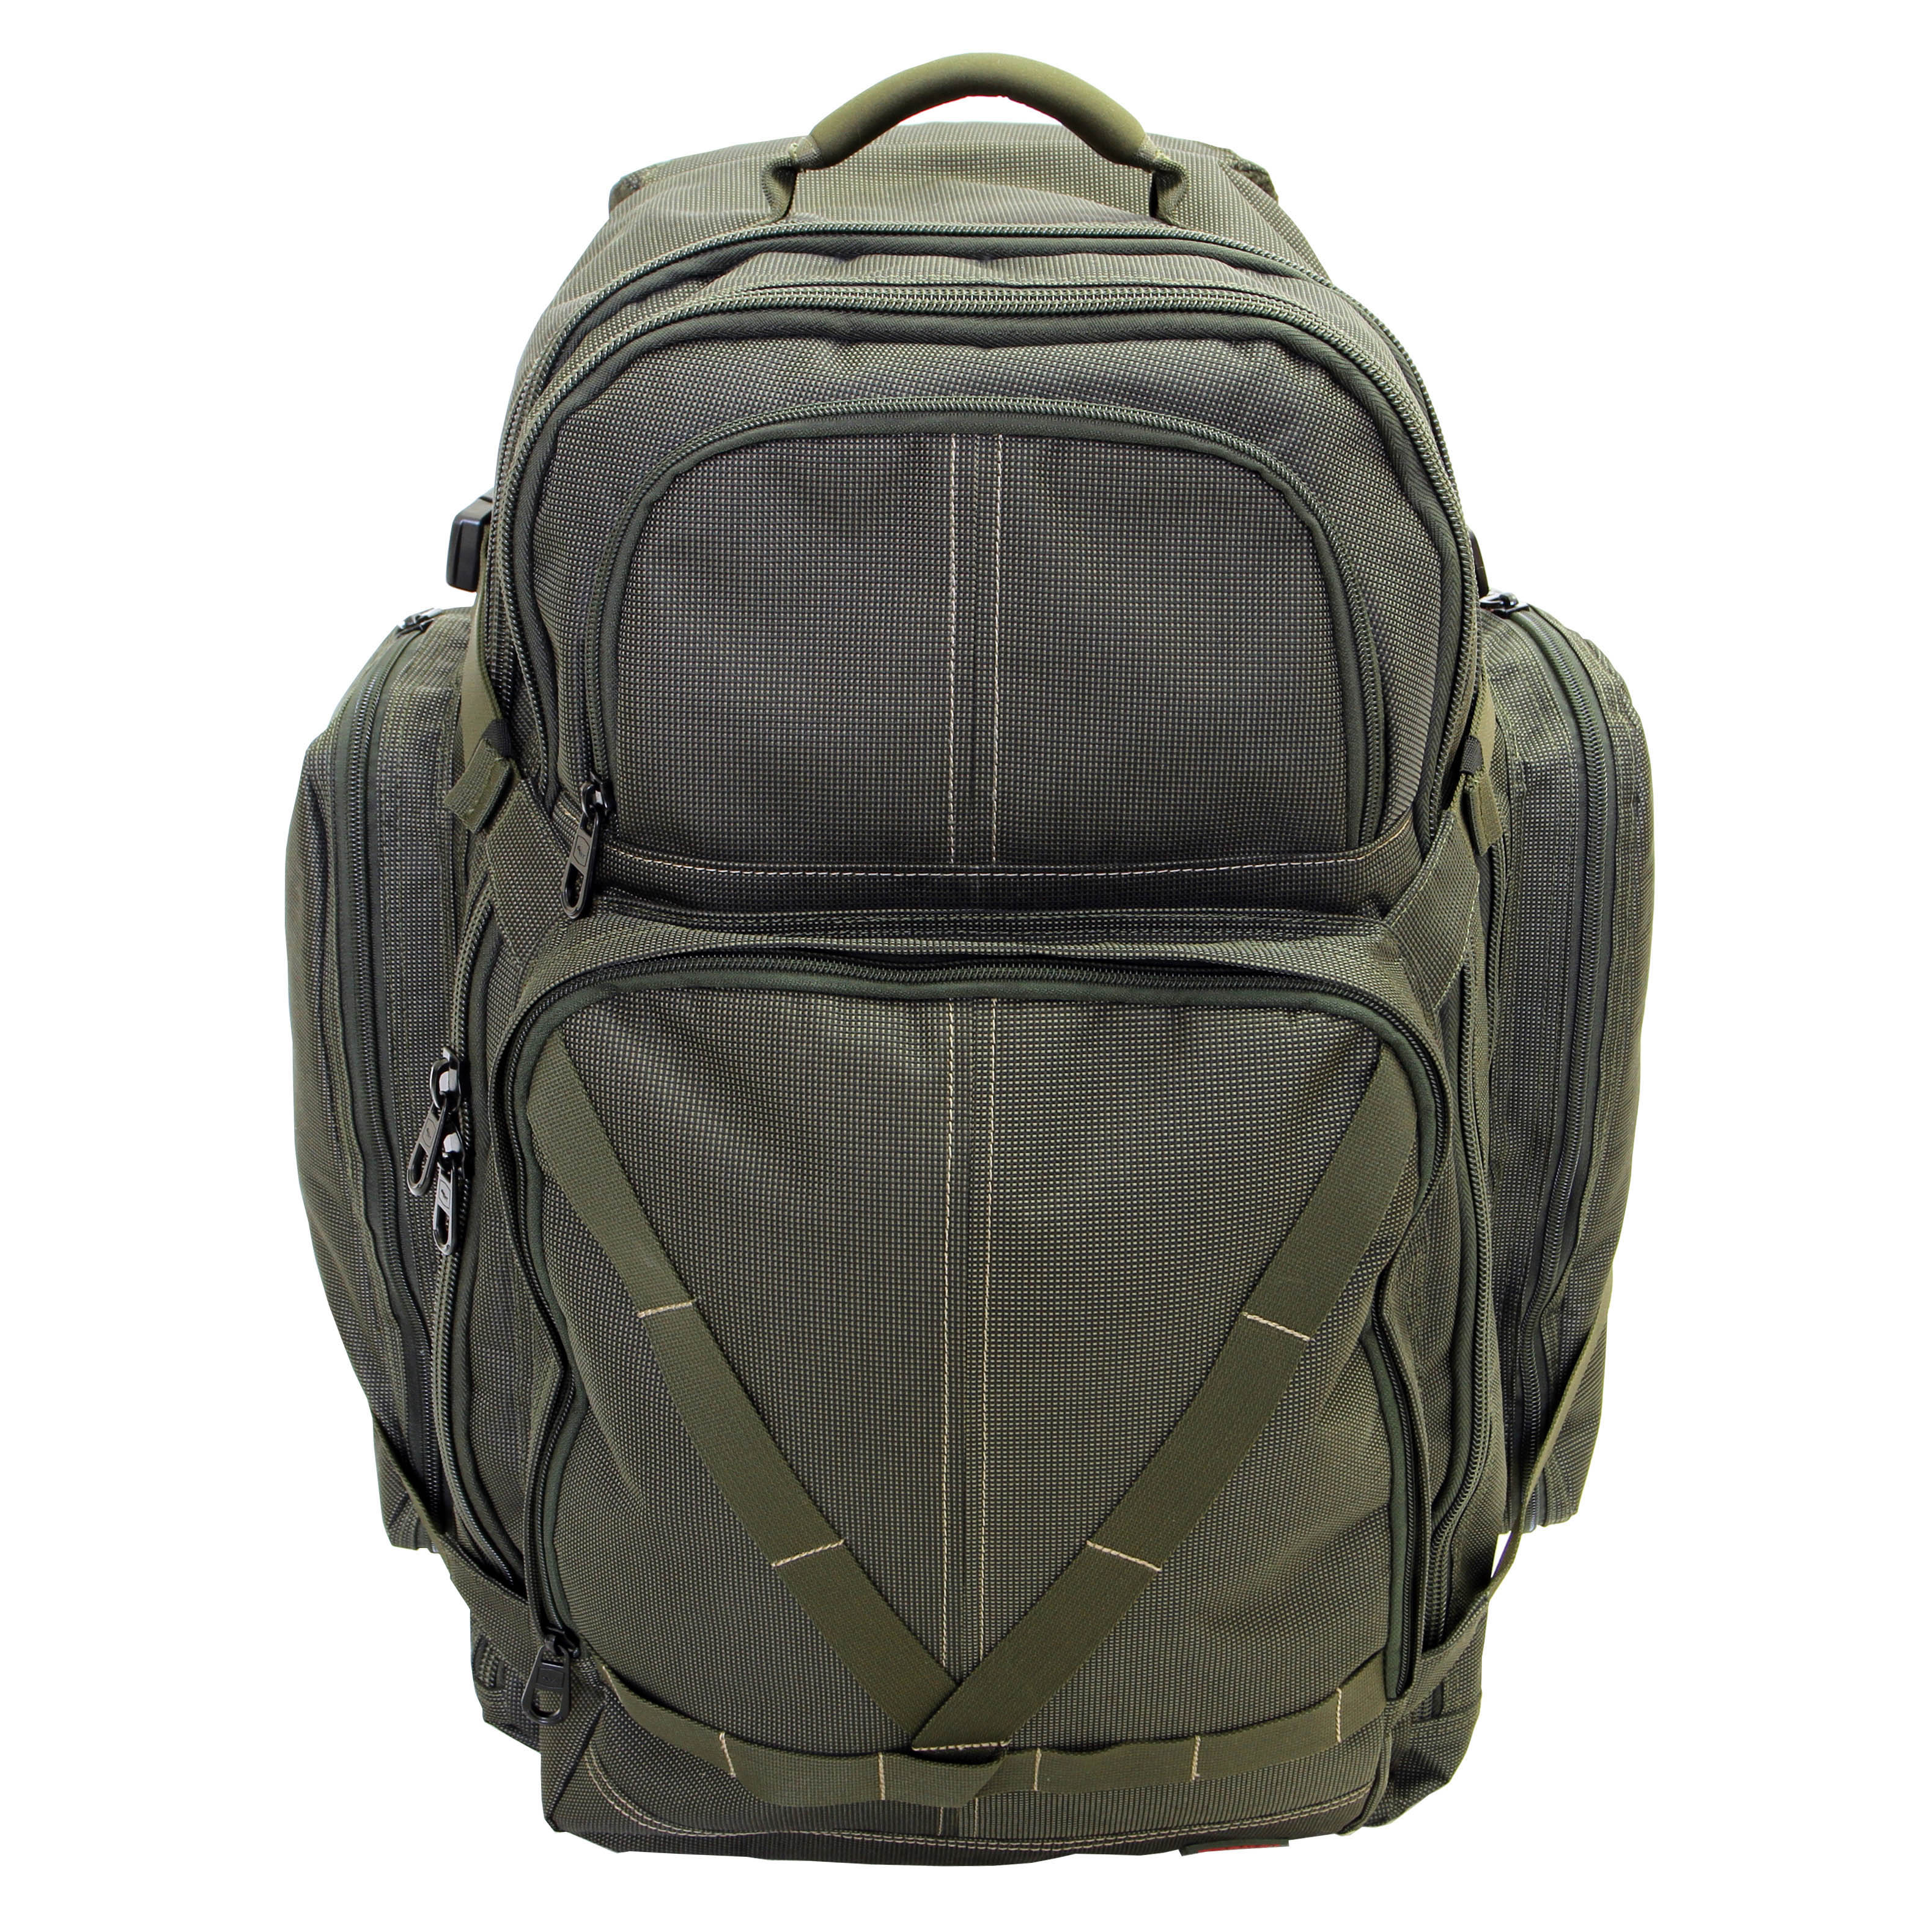 Taska tašky, batohy - Backpack batoh na záda větší